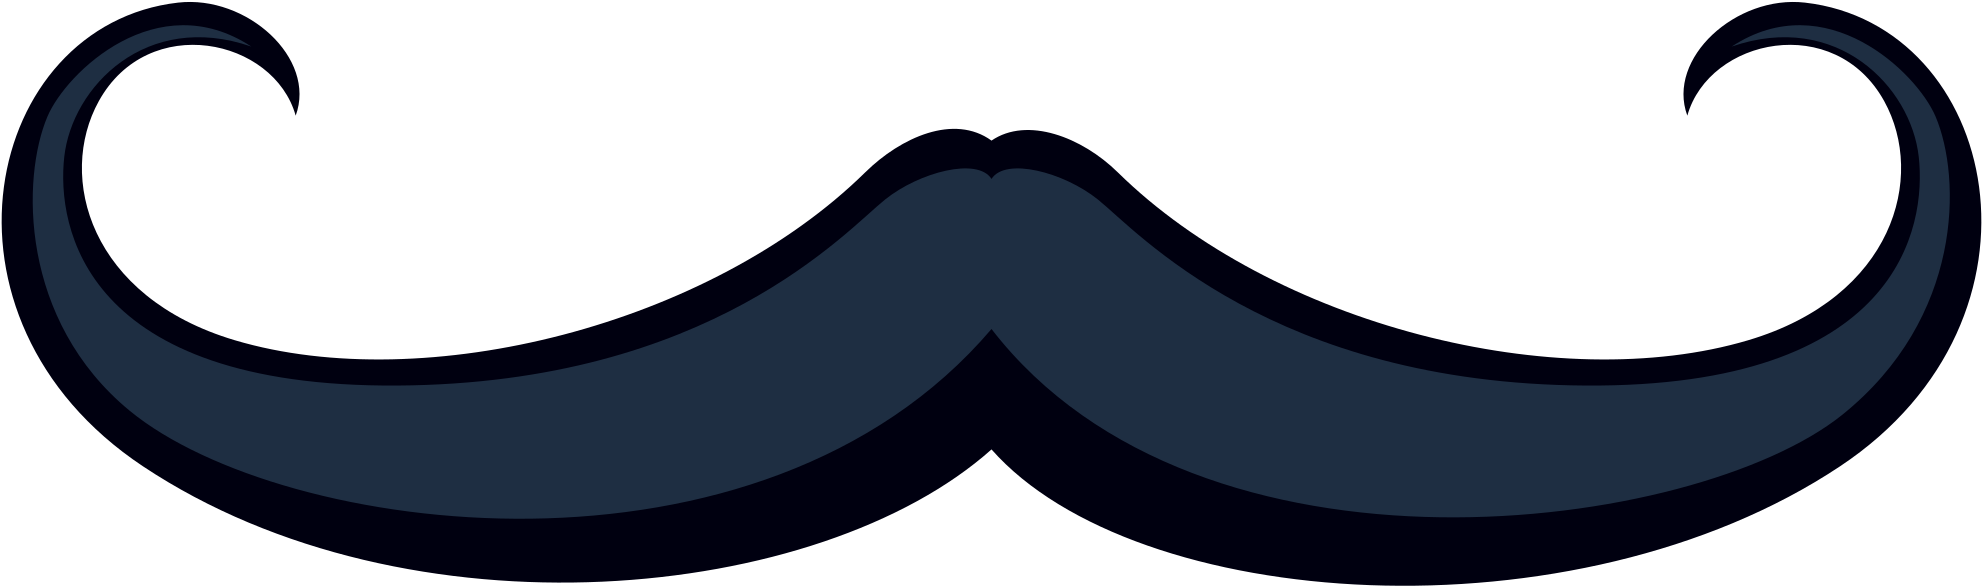 Vintage Mustache Nálepka Od Uživatele Twitterověřený Clipart (2048x2048), Png Download